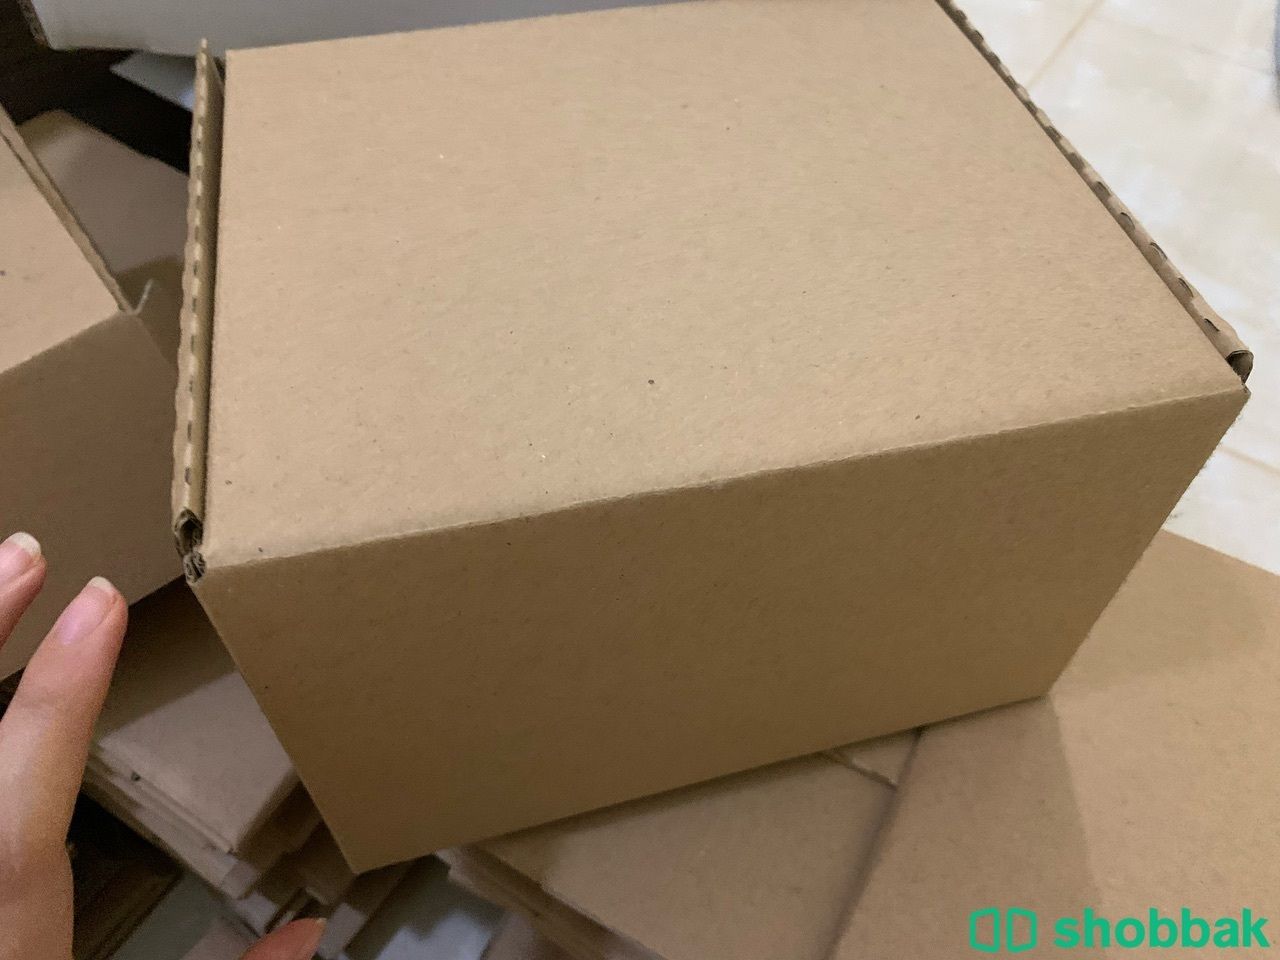 Boxs Shobbak Saudi Arabia